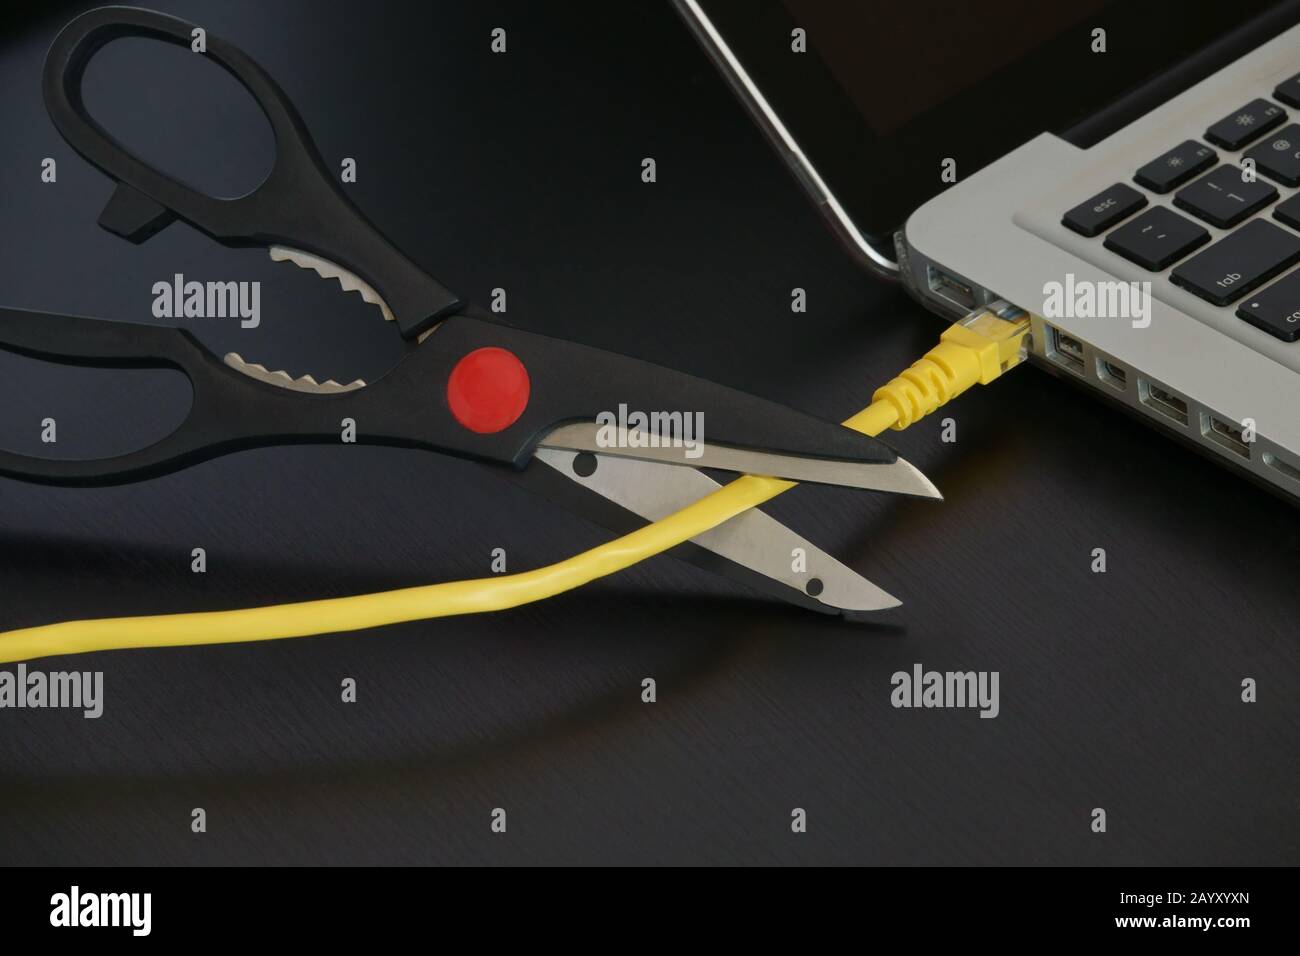 Eine scharfe Schere wird kurz vor dem Schneiden eines gelben ethernet-internetkabels angezeigt, das an einen Laptop-Computer angeschlossen ist. Stockfoto